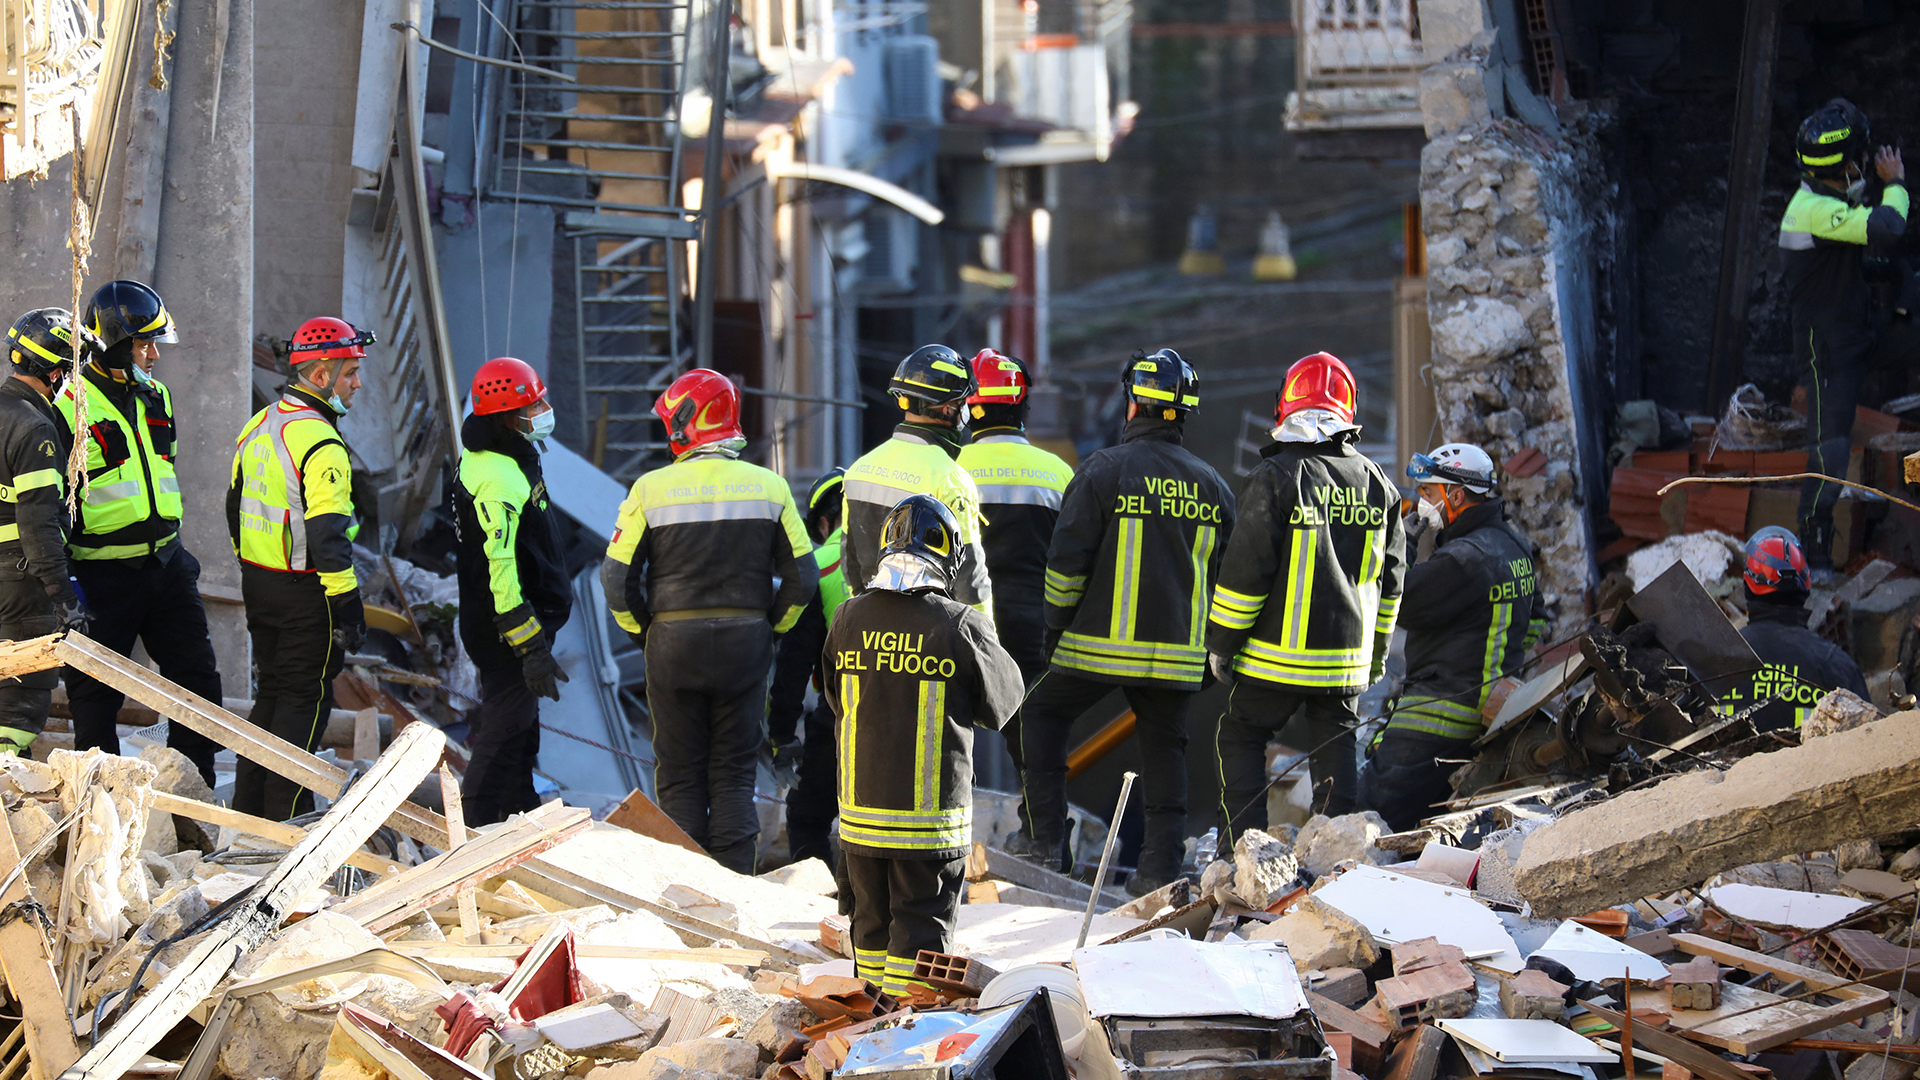 Mitglieder eines Rettungsteams suchen nach einer Gasexplosion in einem Wohnhaus in Ravanusa, Italien, nach Opfern. | REUTERS